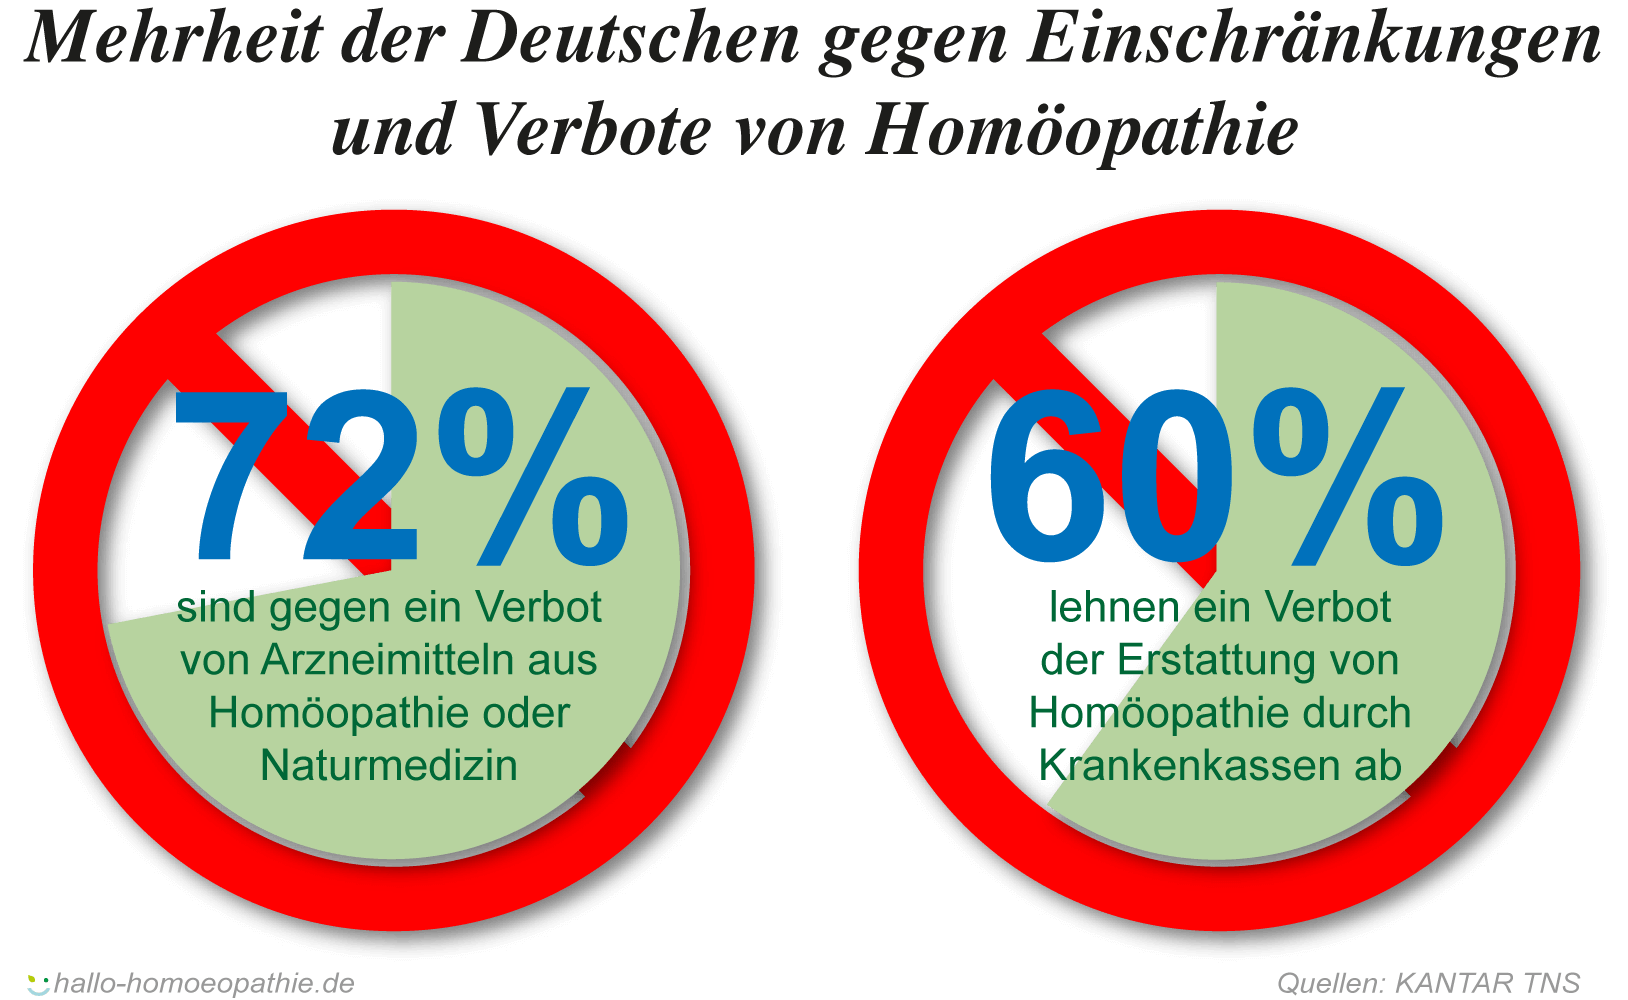 Die Deutschen sind mehrheitlich gegen Einschränkungen und Homöopathie-Verbote